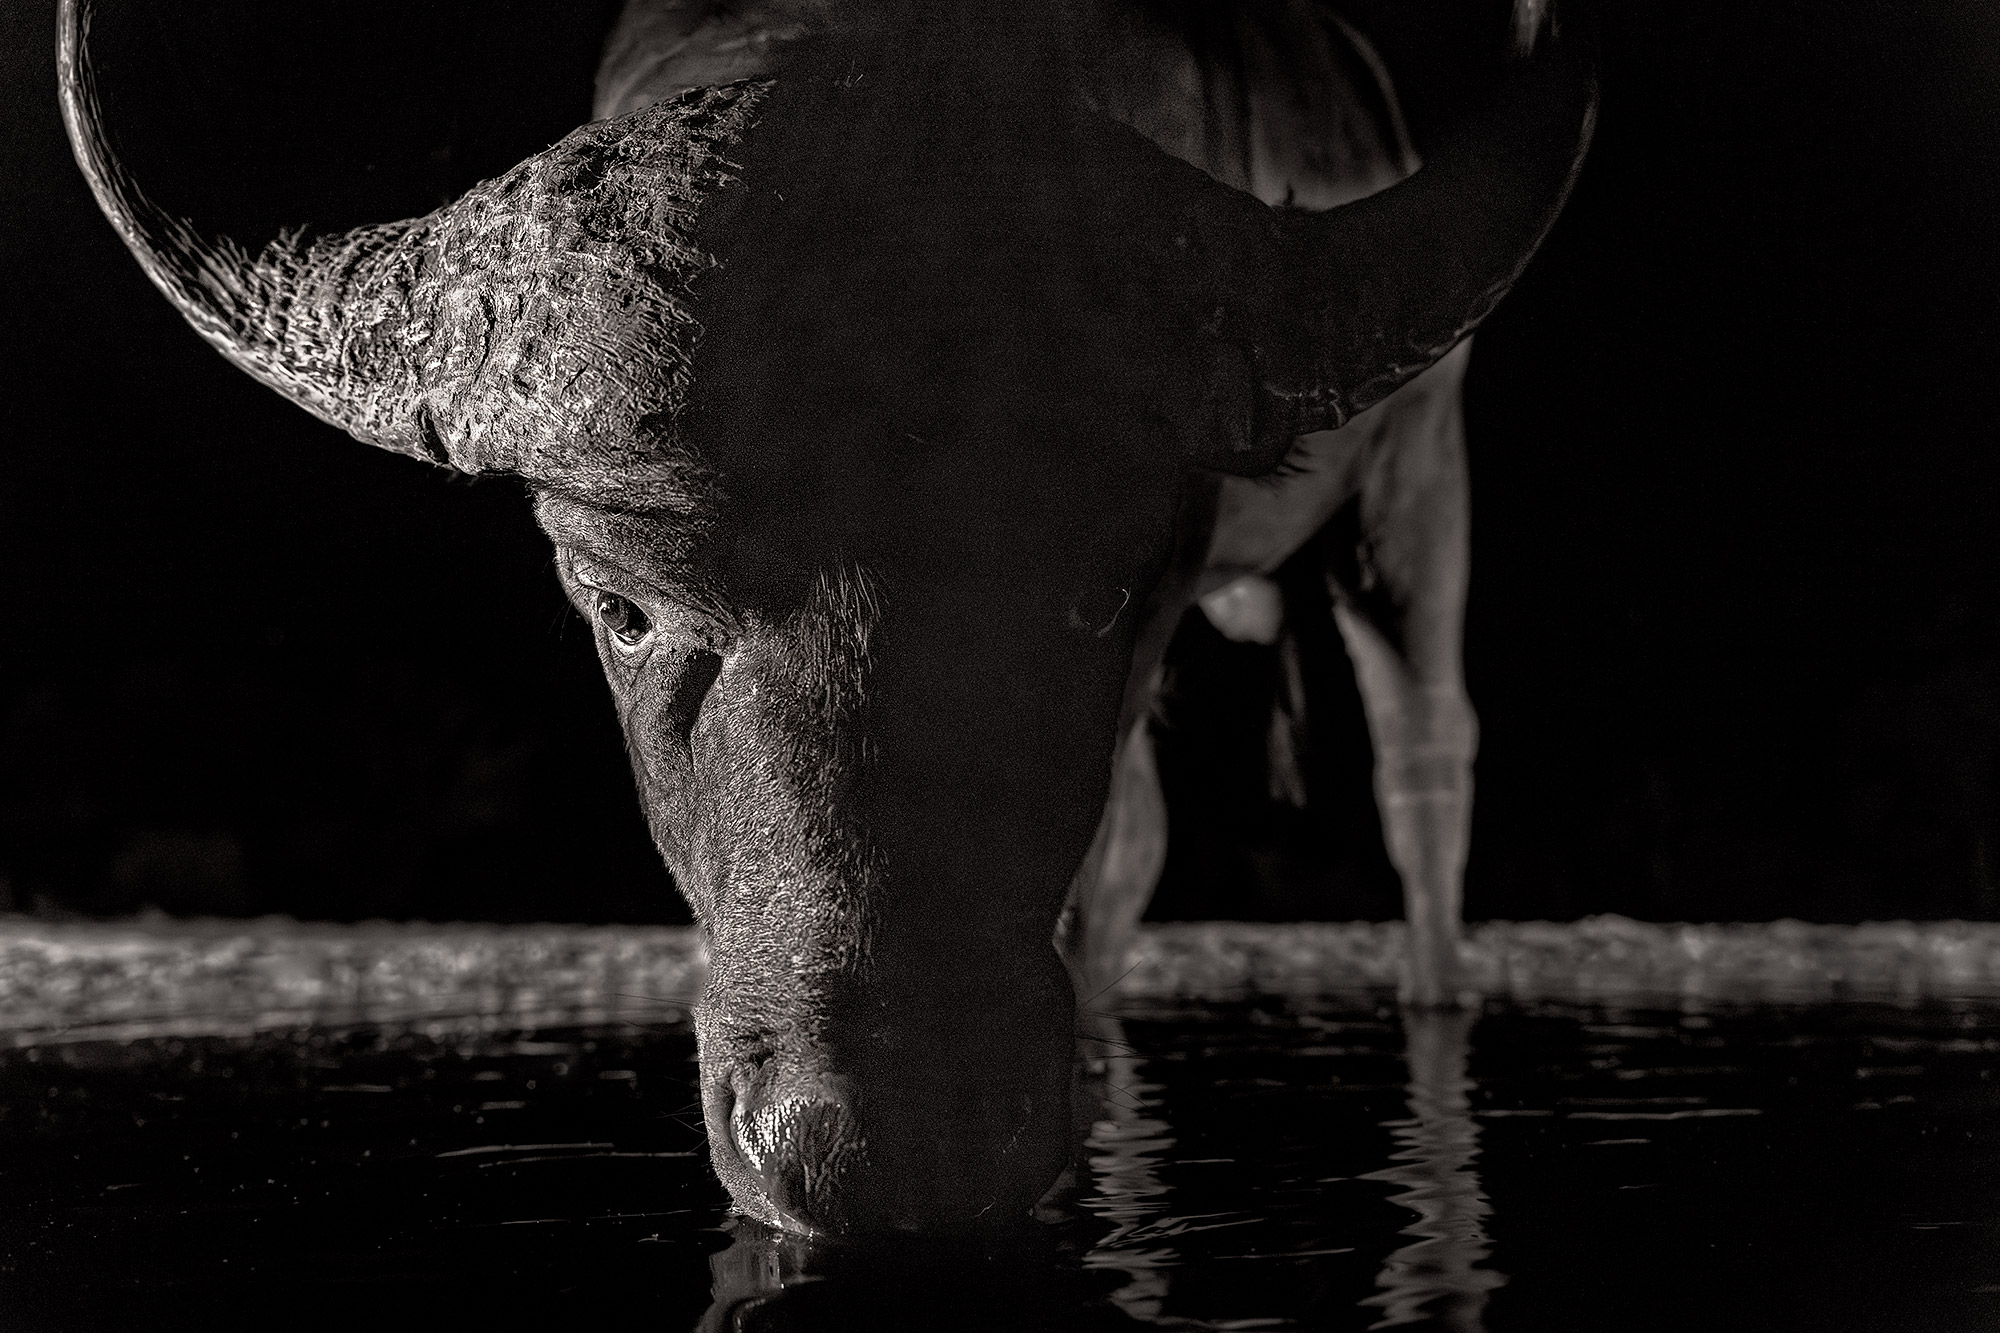 Ein Büffel trinkt Wasser in der Nacht. Fotografiert von Benny Rebel auf einer Fotosafari durch Südafrika.